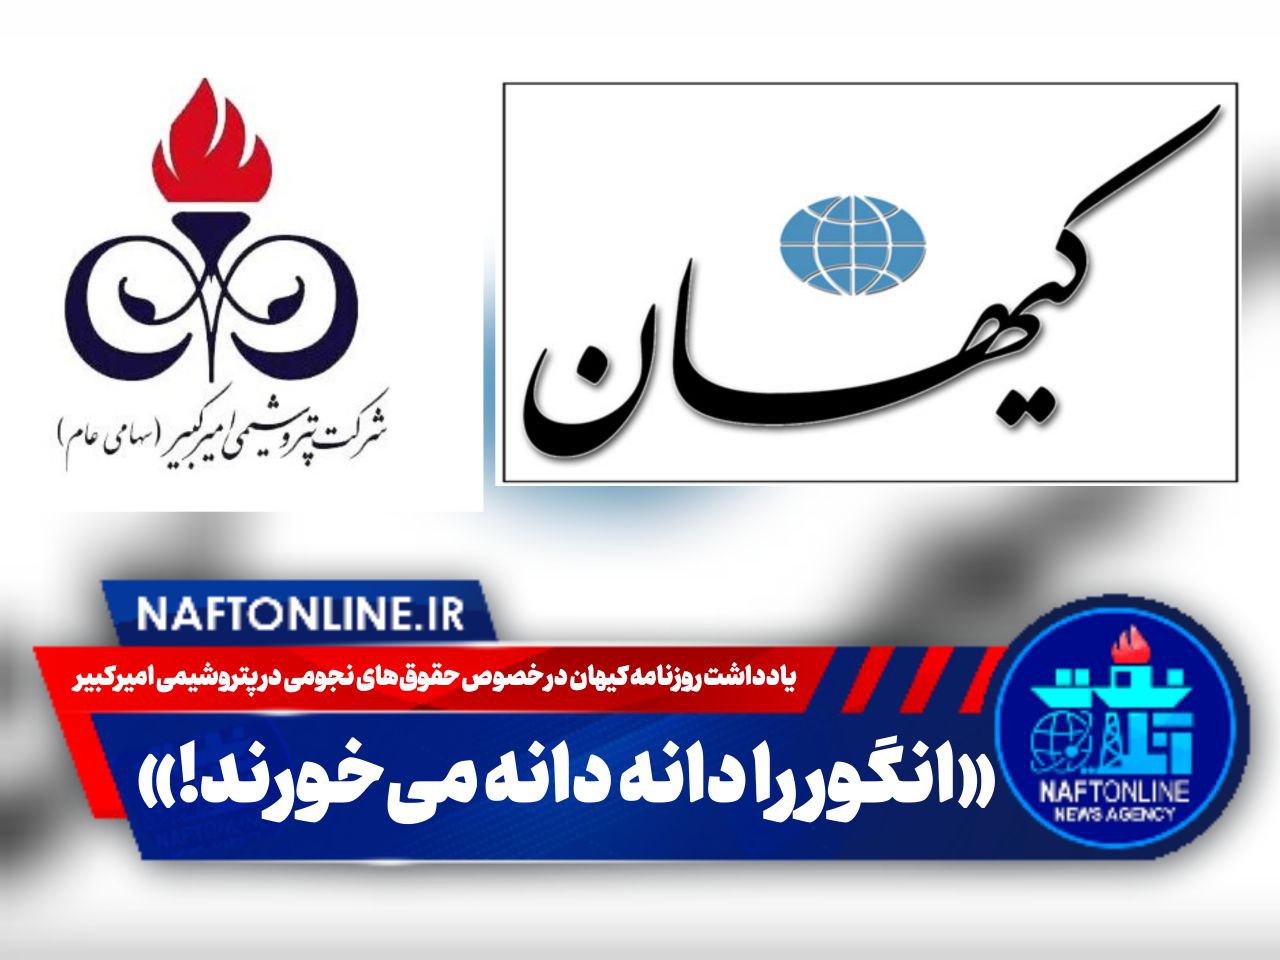 پتروشیمی امیرکبیر و حقوق های نجومی | یادداشت روزنامه کیهان | نفت آنلاین